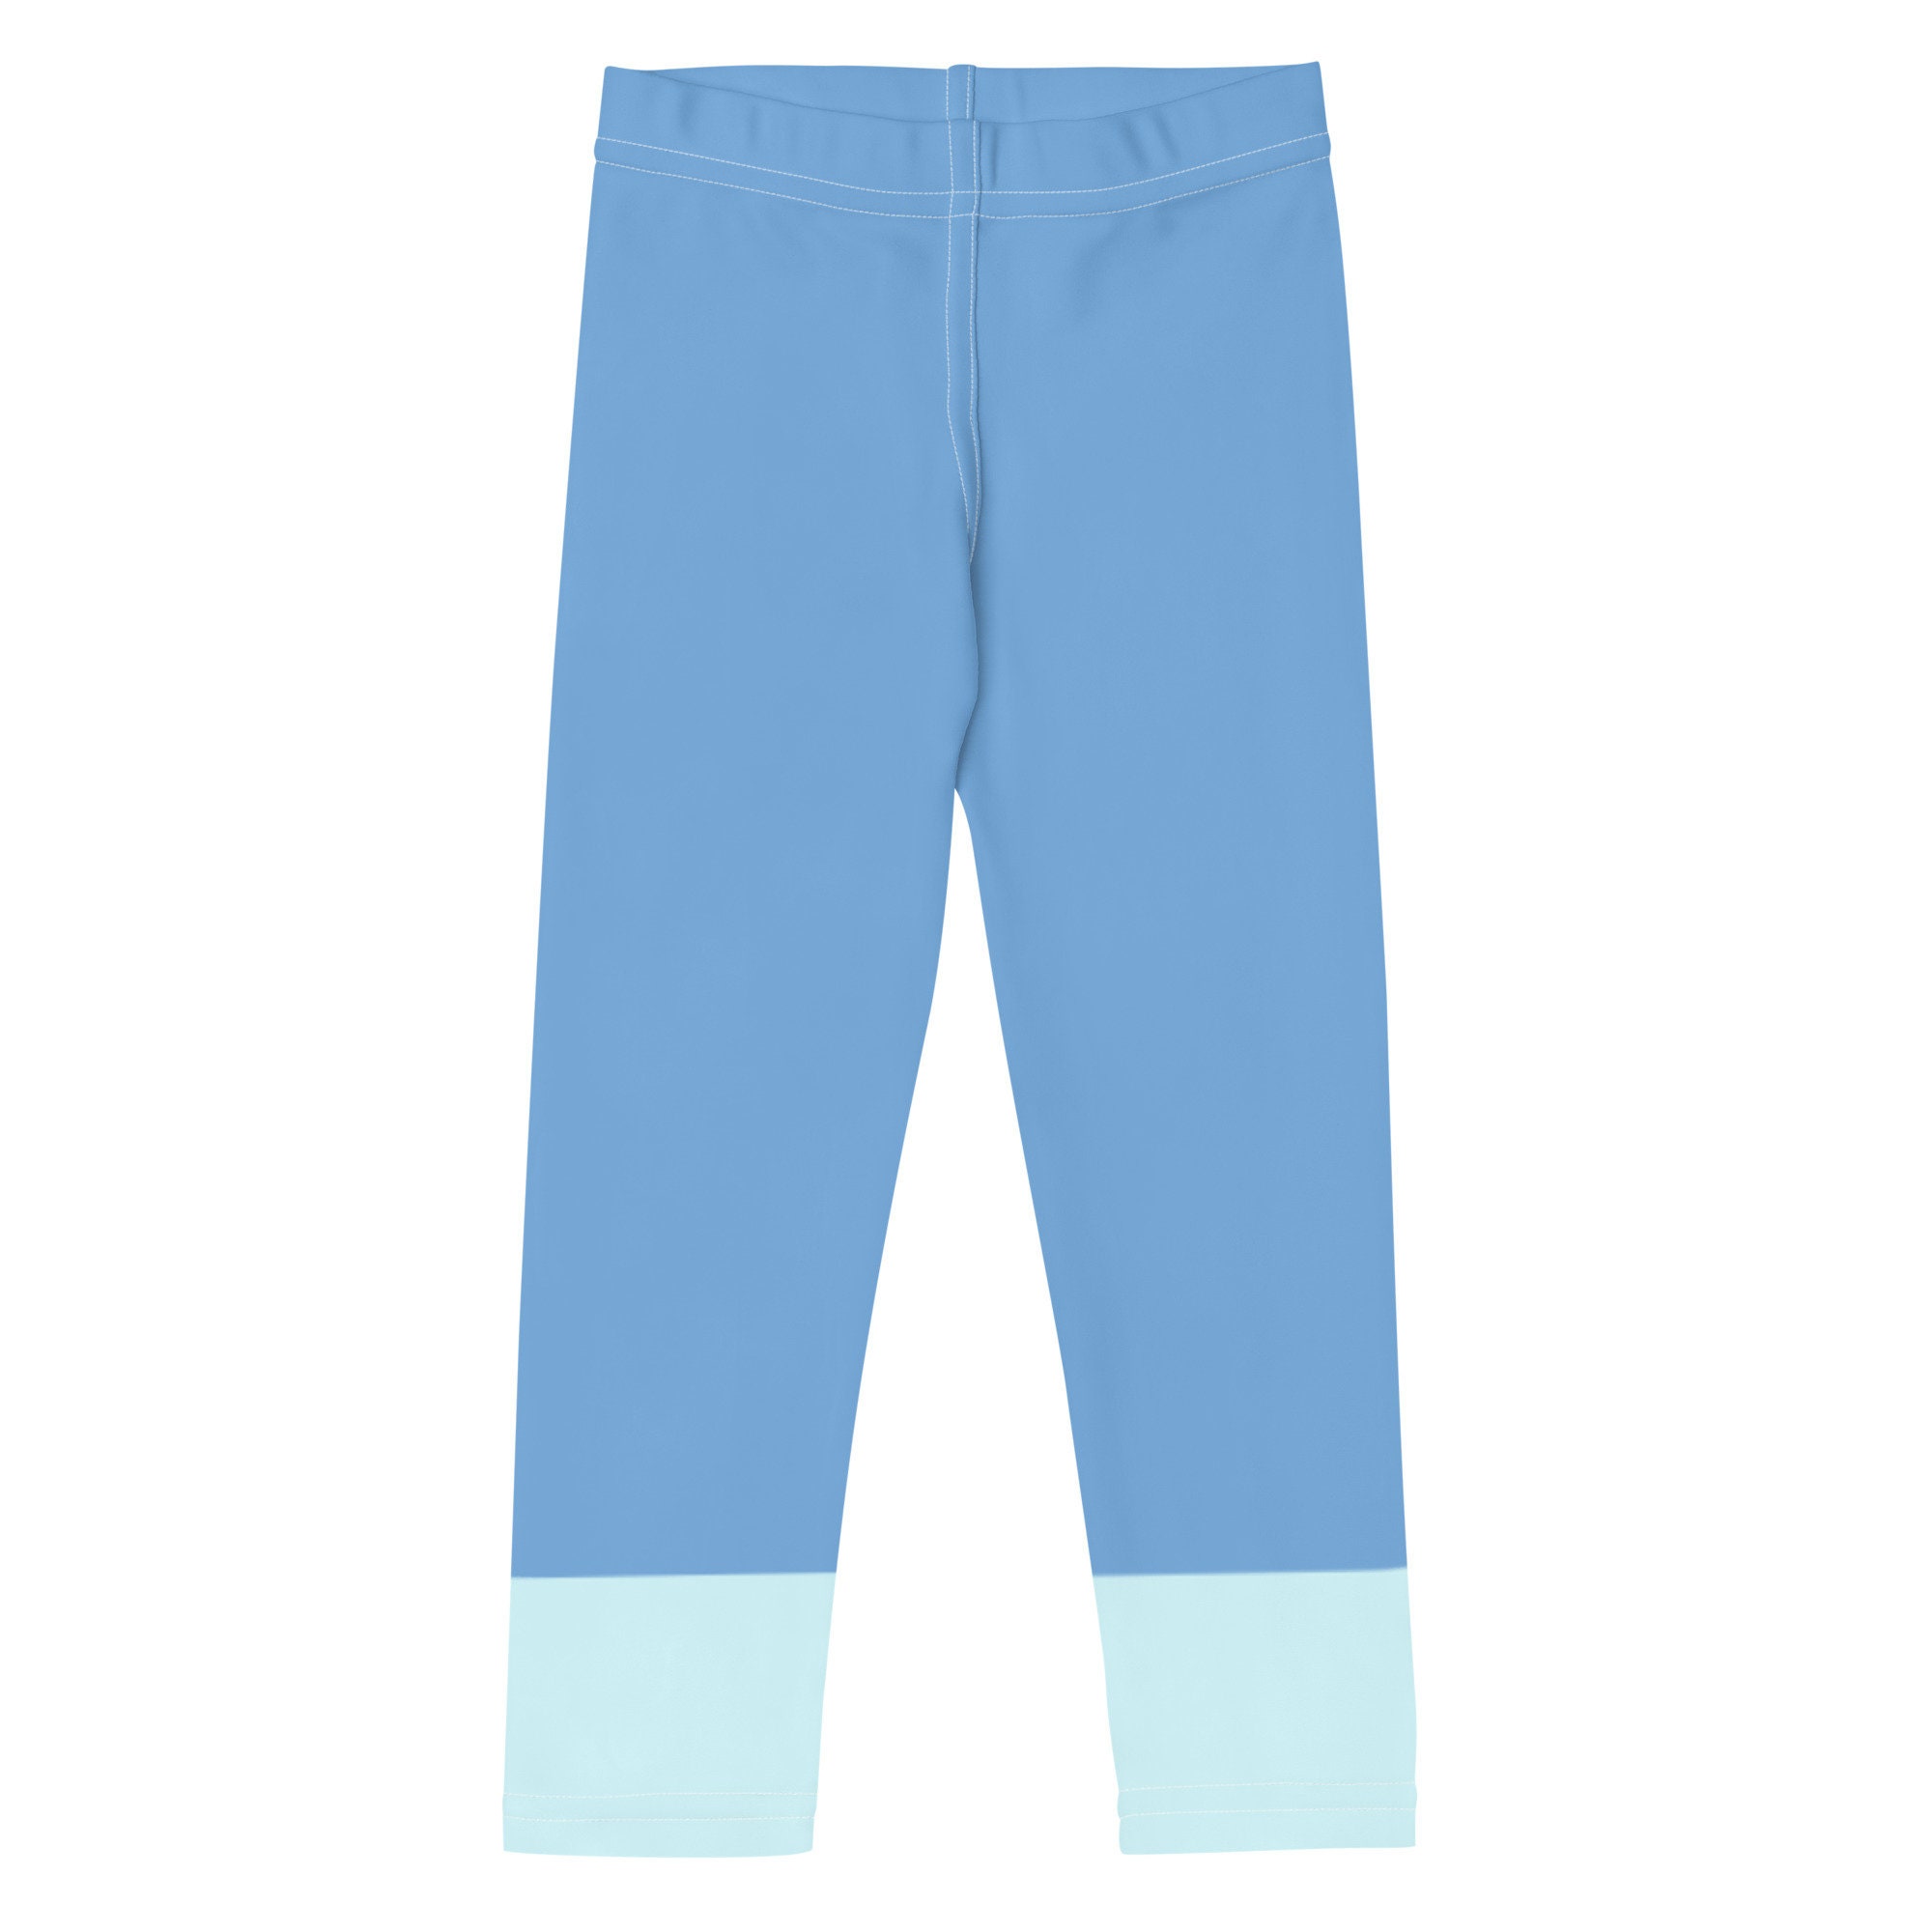 Bluey Kids Unisex Shorts